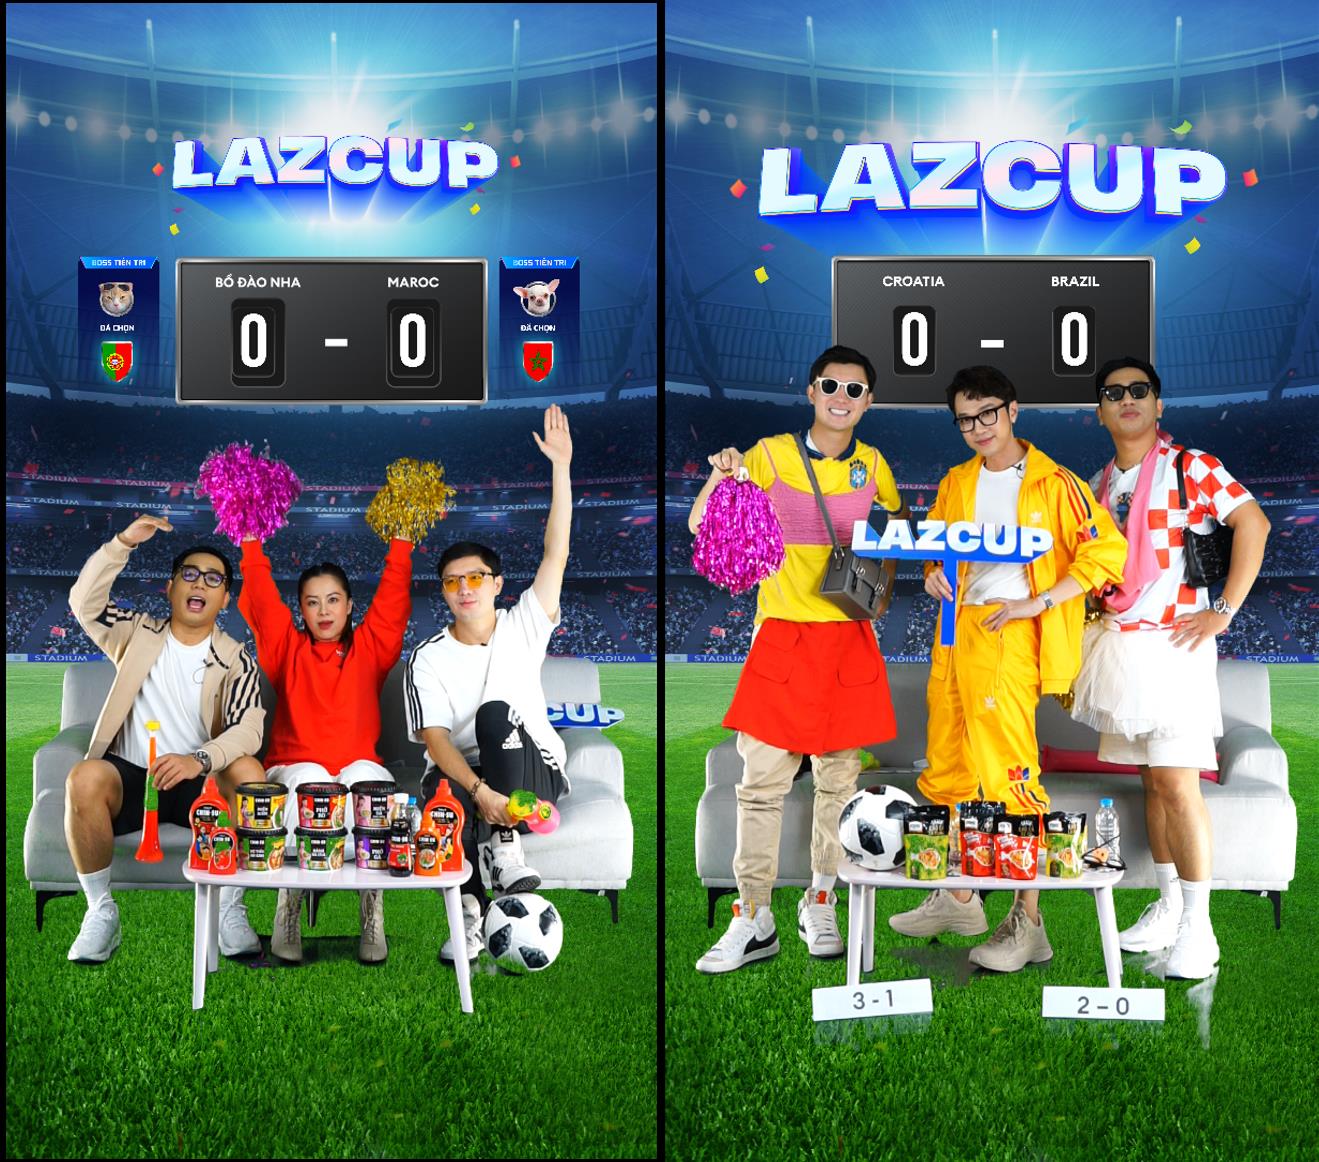 Khám phá LazCup, show xem chung cho giới trẻ tận hưởng trọn vẹn mùa World Cup - Ảnh 1.